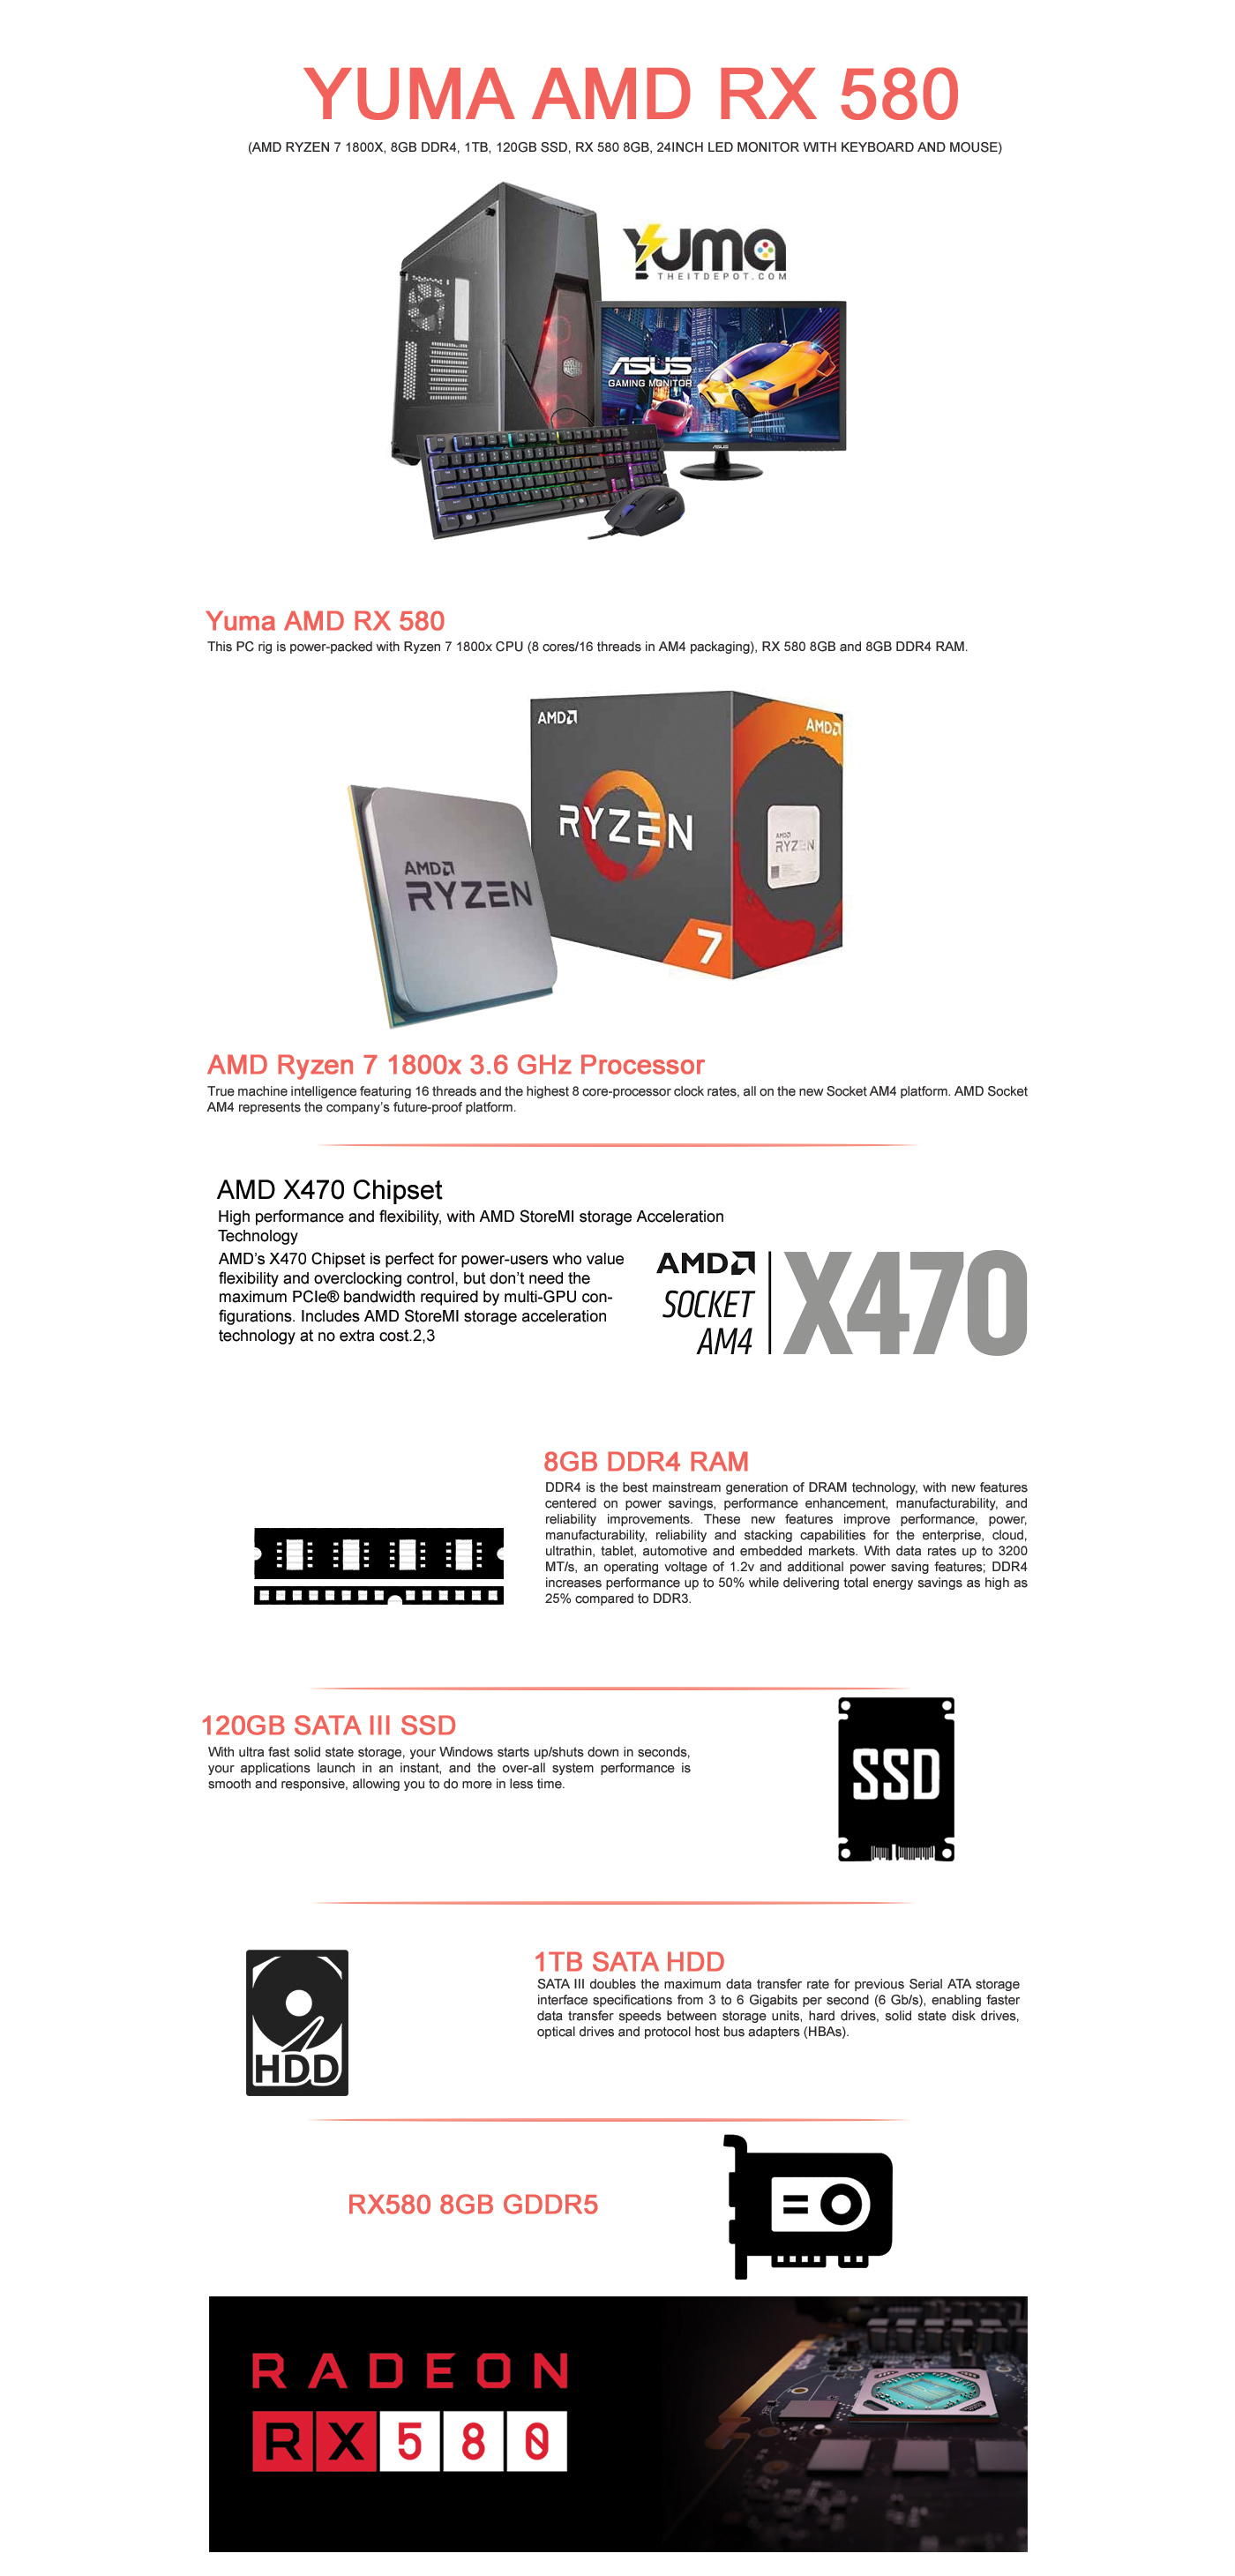  Buy Online Yuma AMD RX 580 (AMD Ryzen 7 1800x, 8GB DDR4, 1TB, 120GB SSD, RX 580 8GB, 24inch LED Monitor with Keyboard and Mouse)